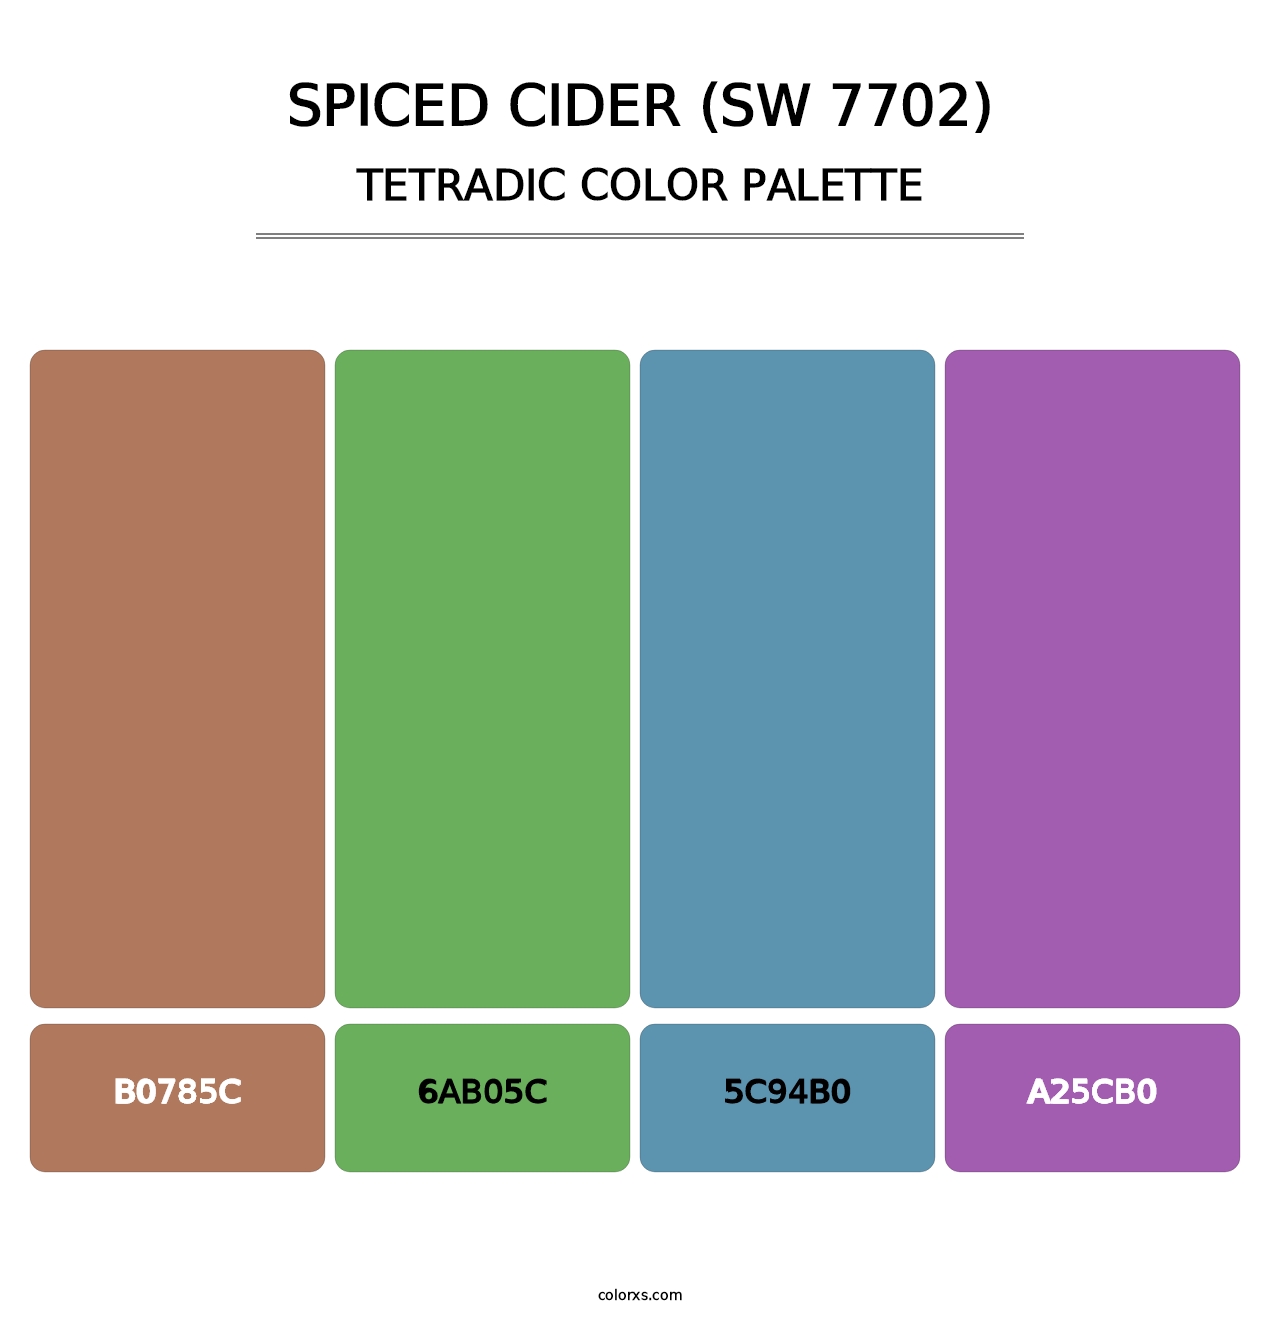 Spiced Cider (SW 7702) - Tetradic Color Palette